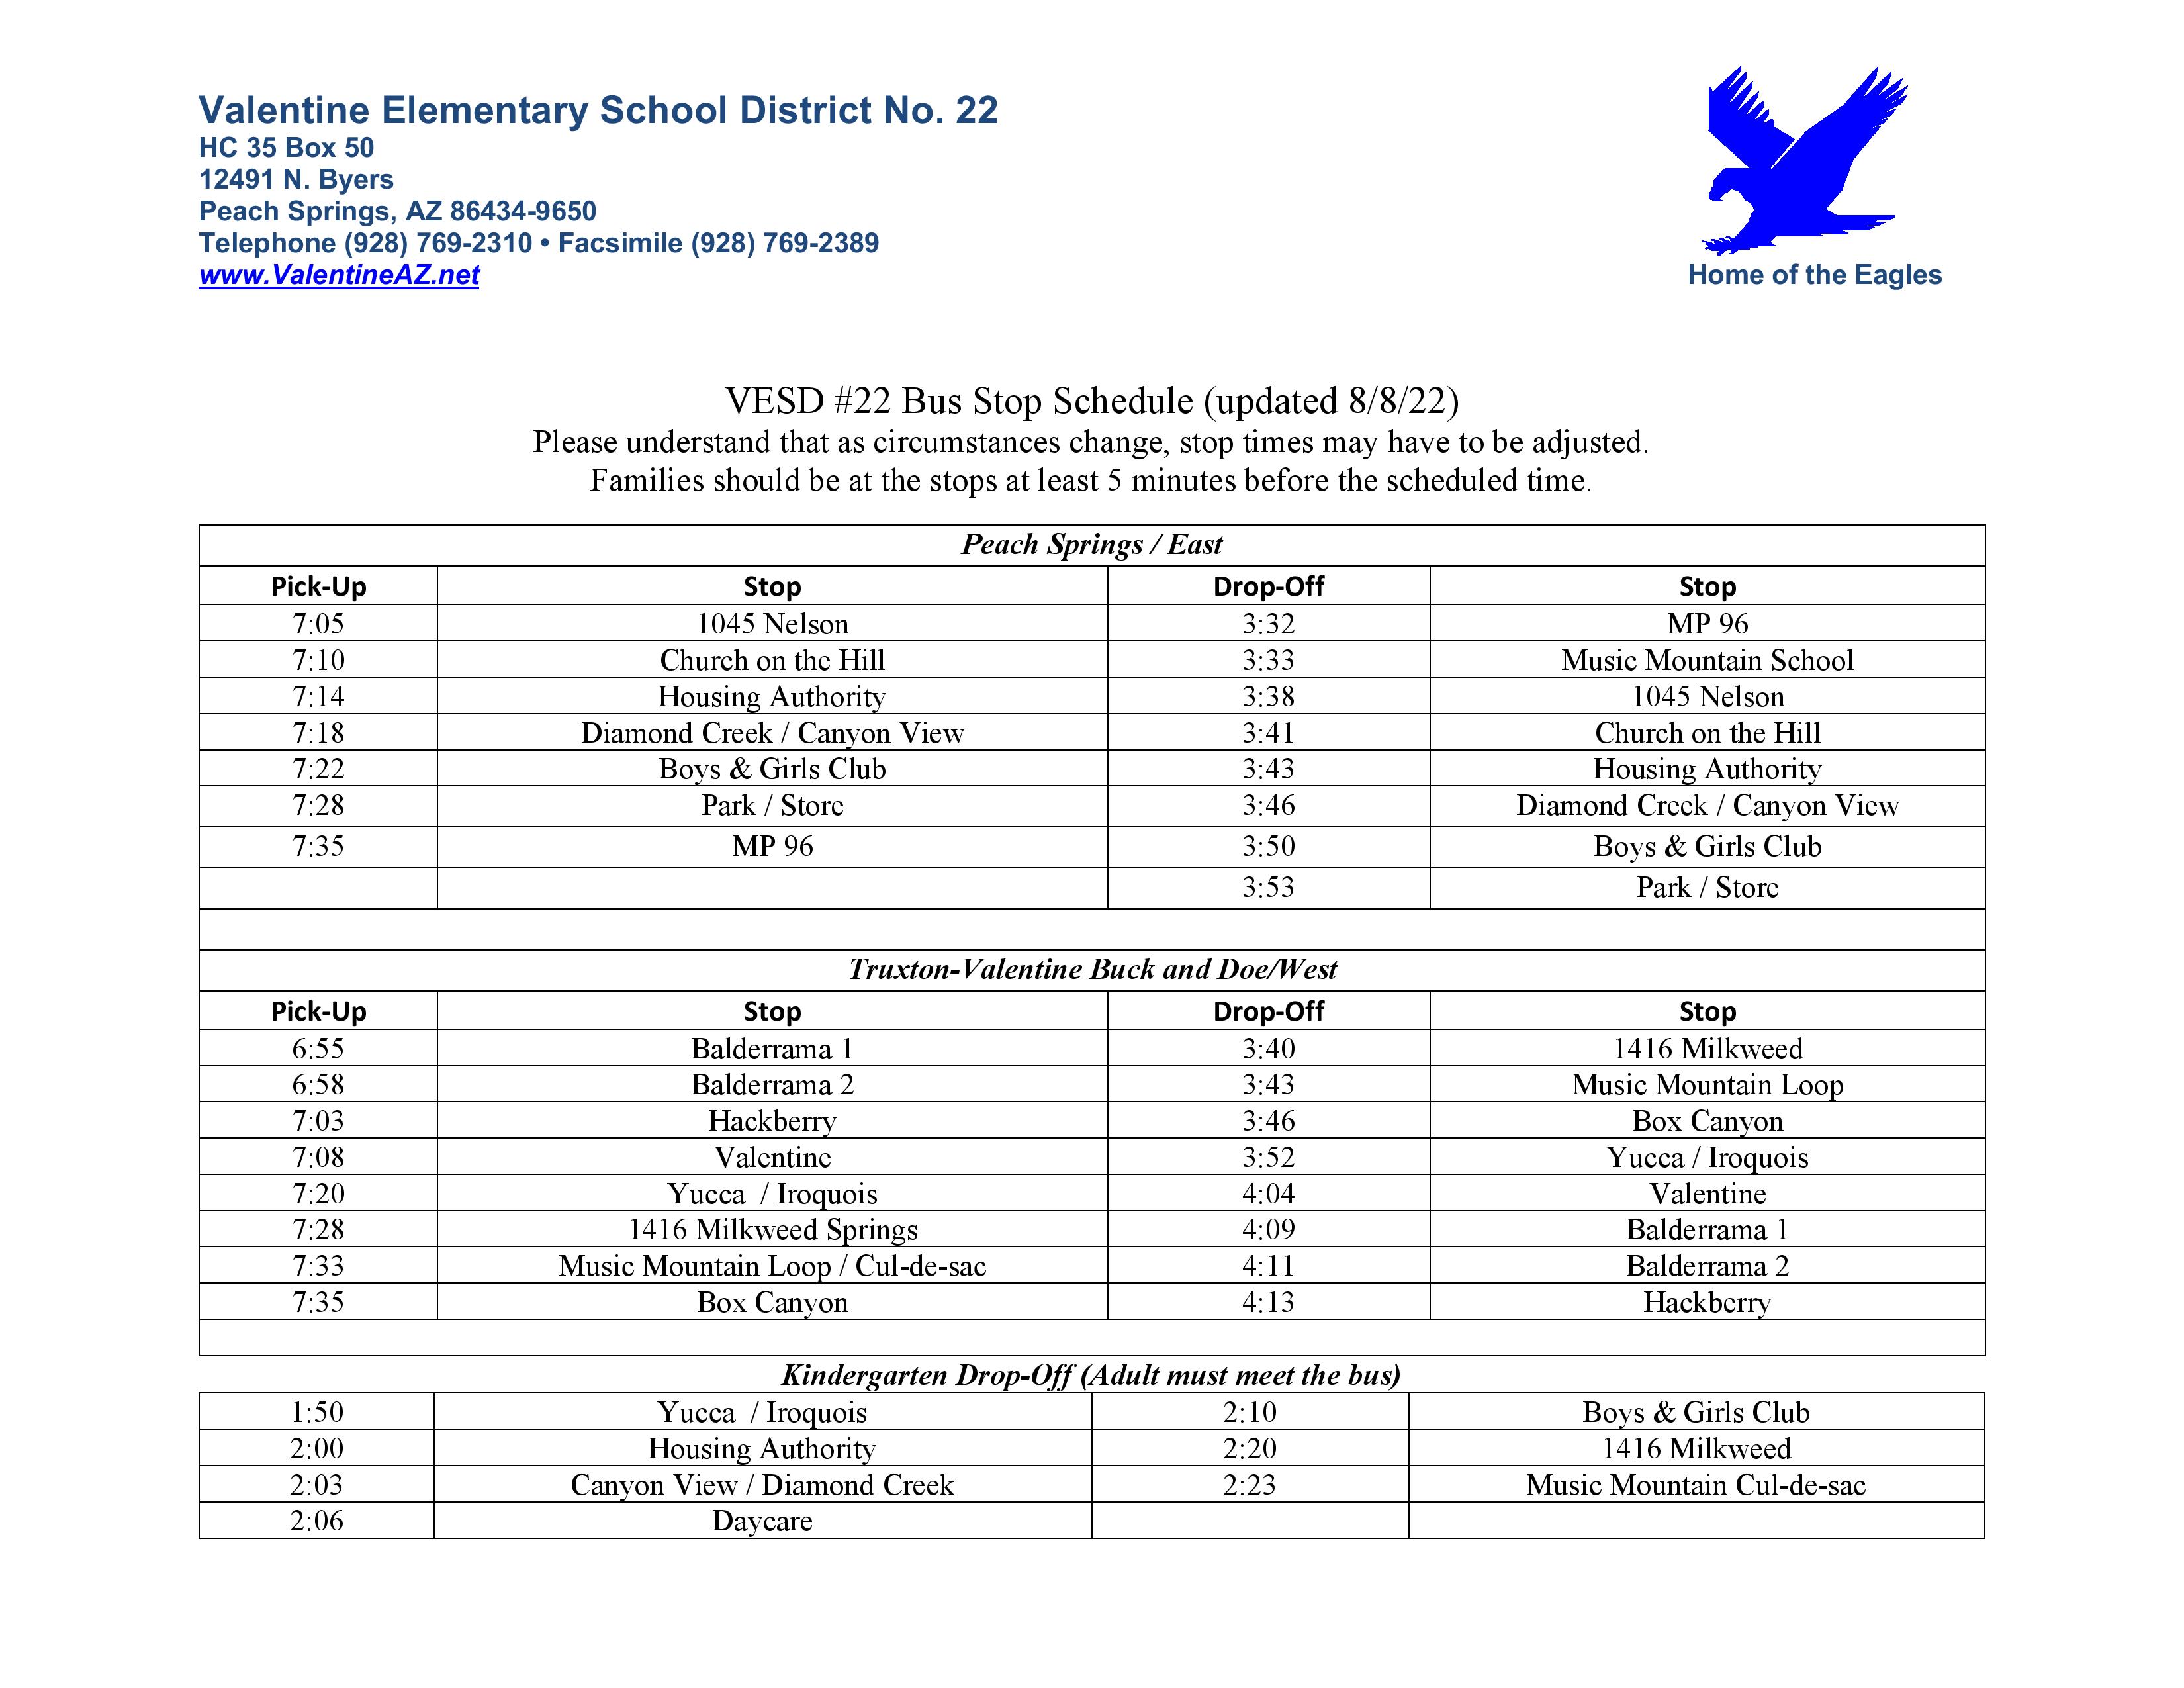 Bus Schedule | Valentine Elementary School